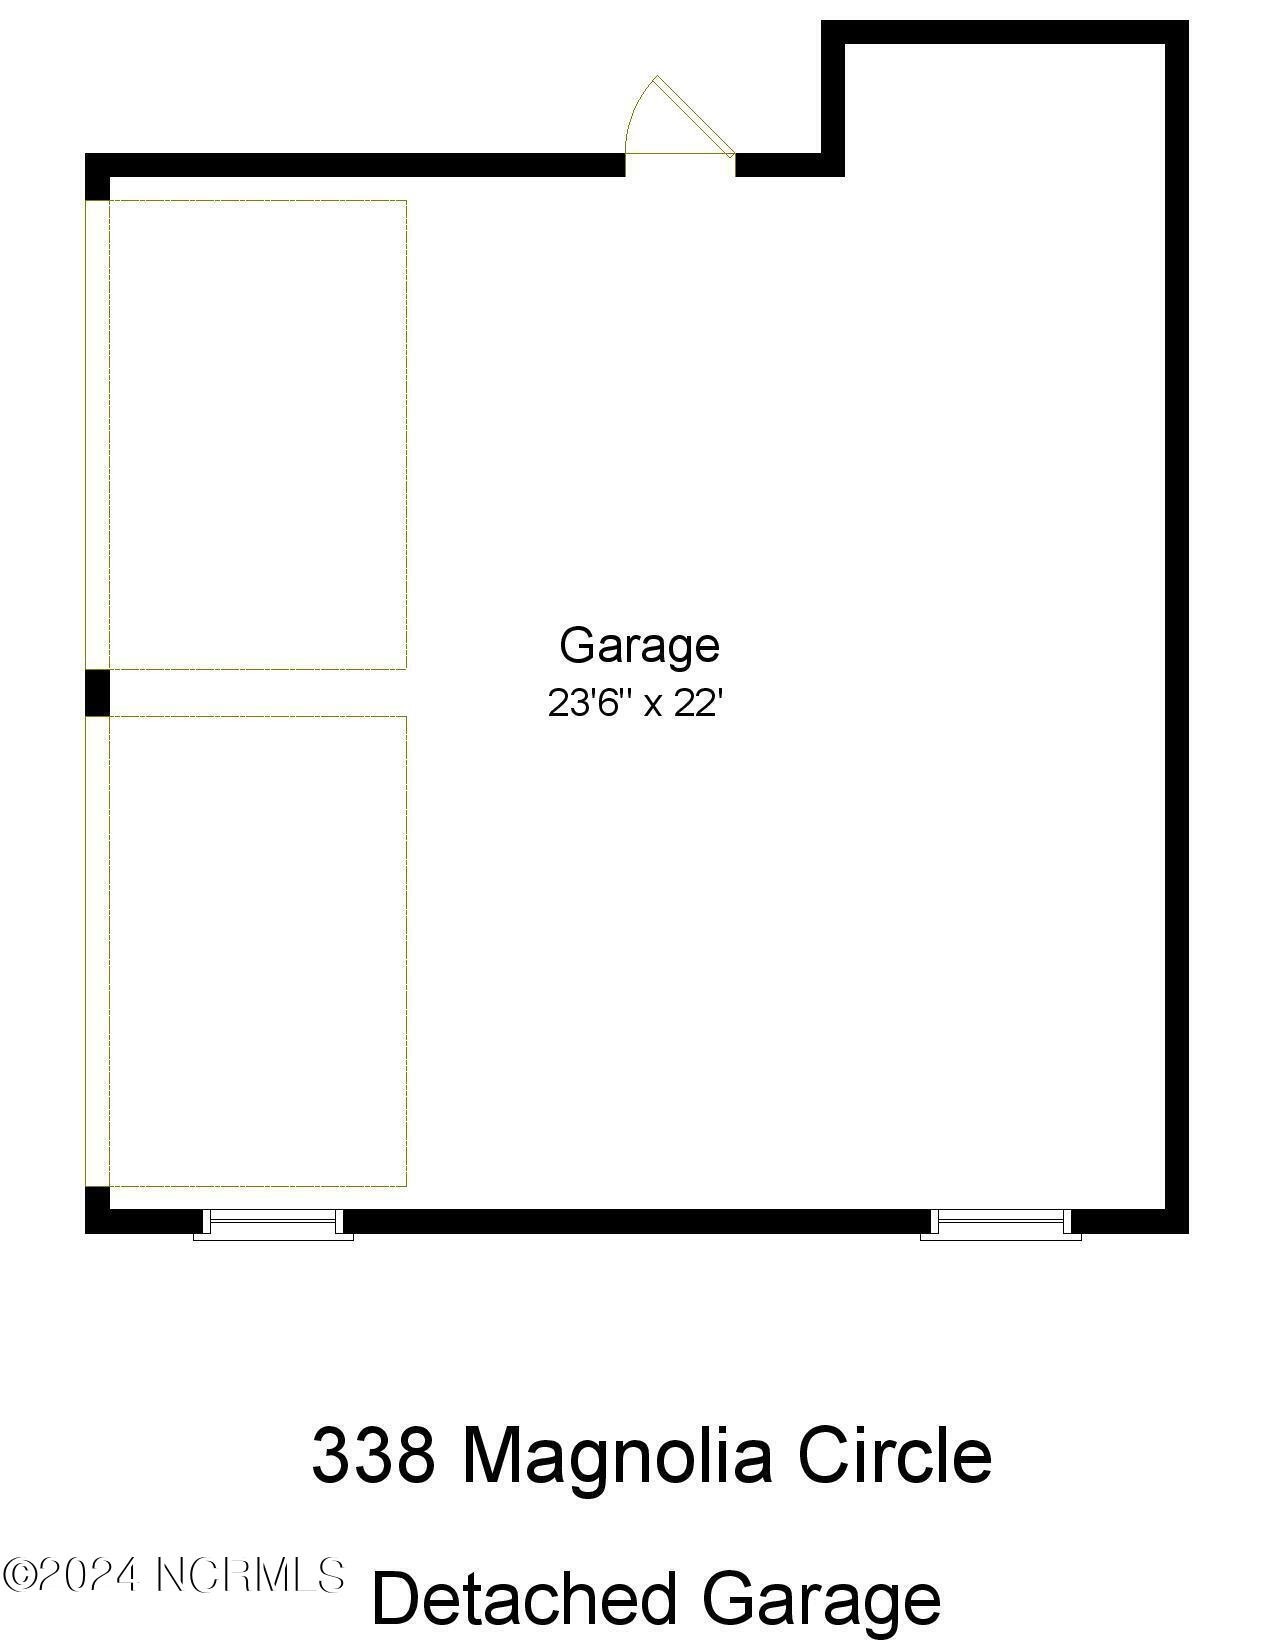 39. 338 Magnolia Circle